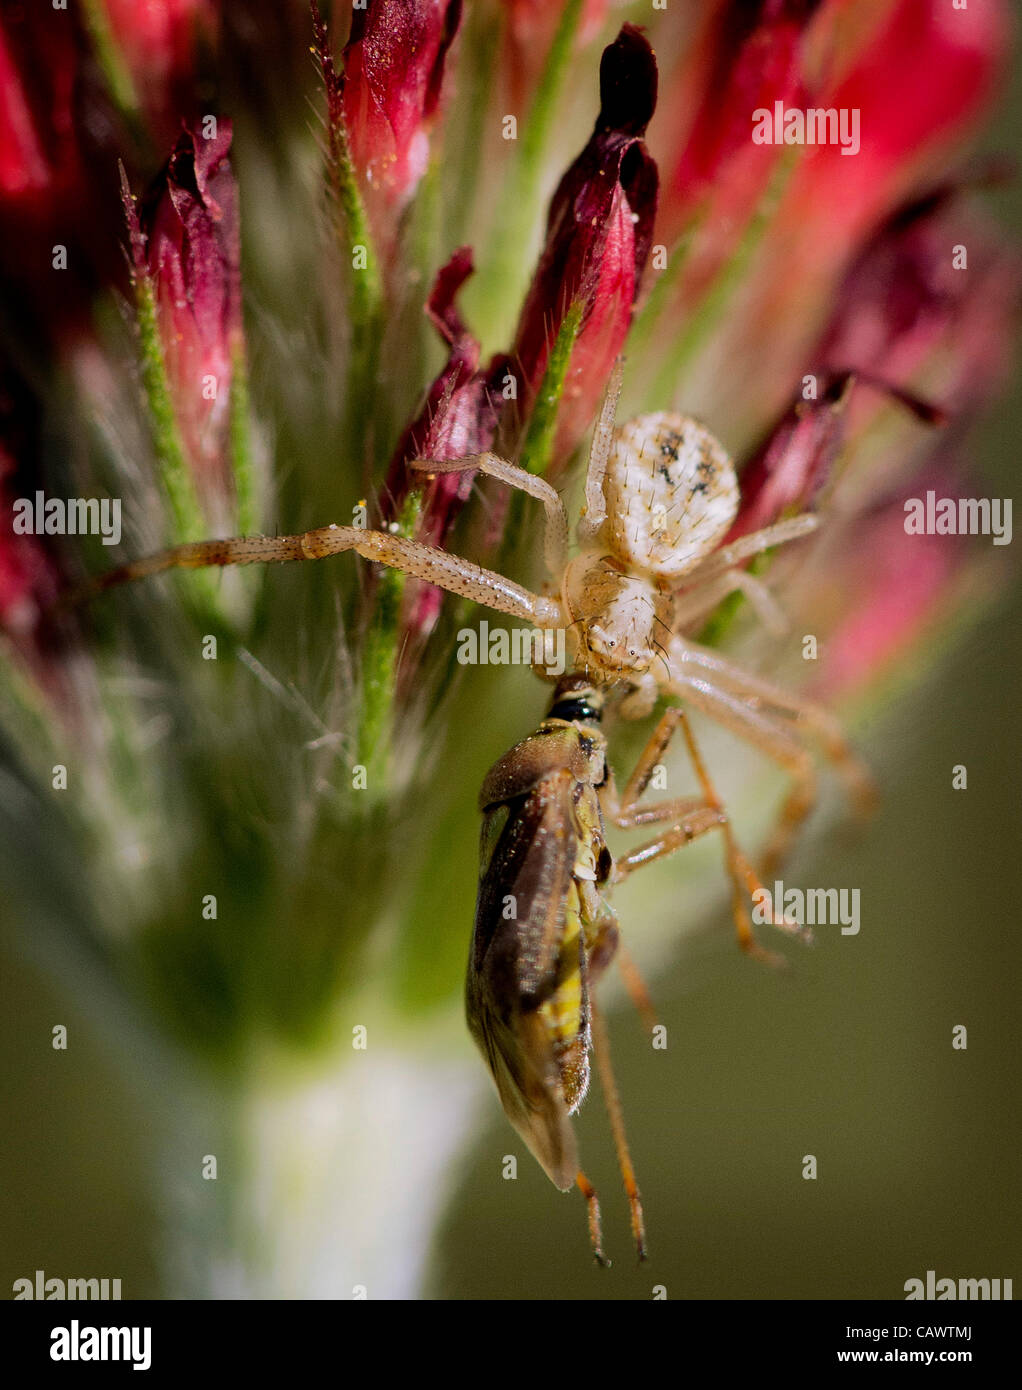 Aprile 28, 2012 - Roseburg, Oregon, Stati Uniti - un ragno predatori aggrappato a un insetto su un trifoglio di cremisi che cresce in un campo nei pressi di Roseburg. (Credito Immagine: © Robin Loznak/ZUMAPRESS.com) Foto Stock